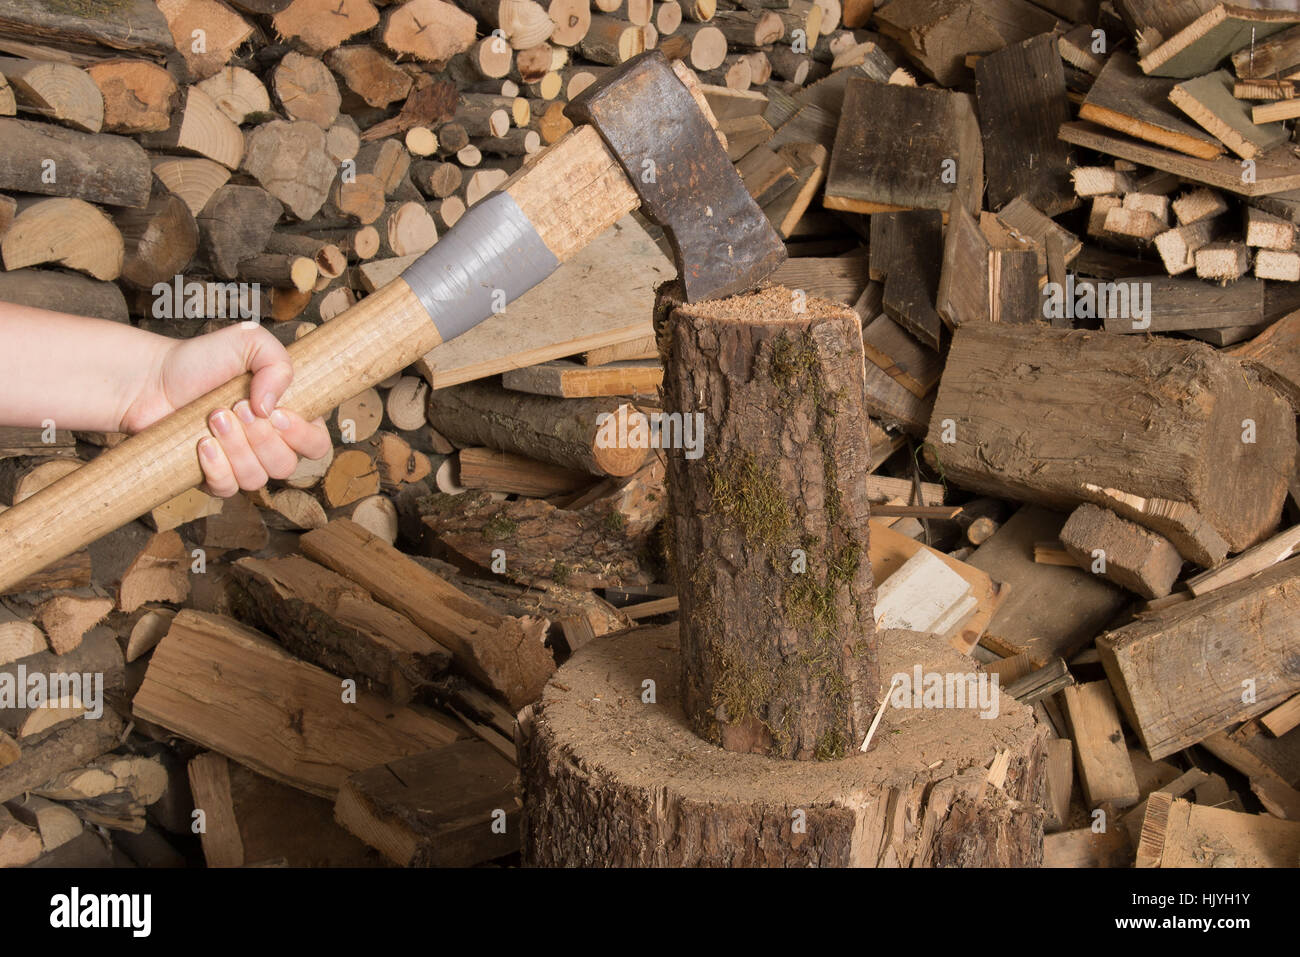 Они колят дрова. Рубка дров. Колотушка для дров. Колоть дрова.